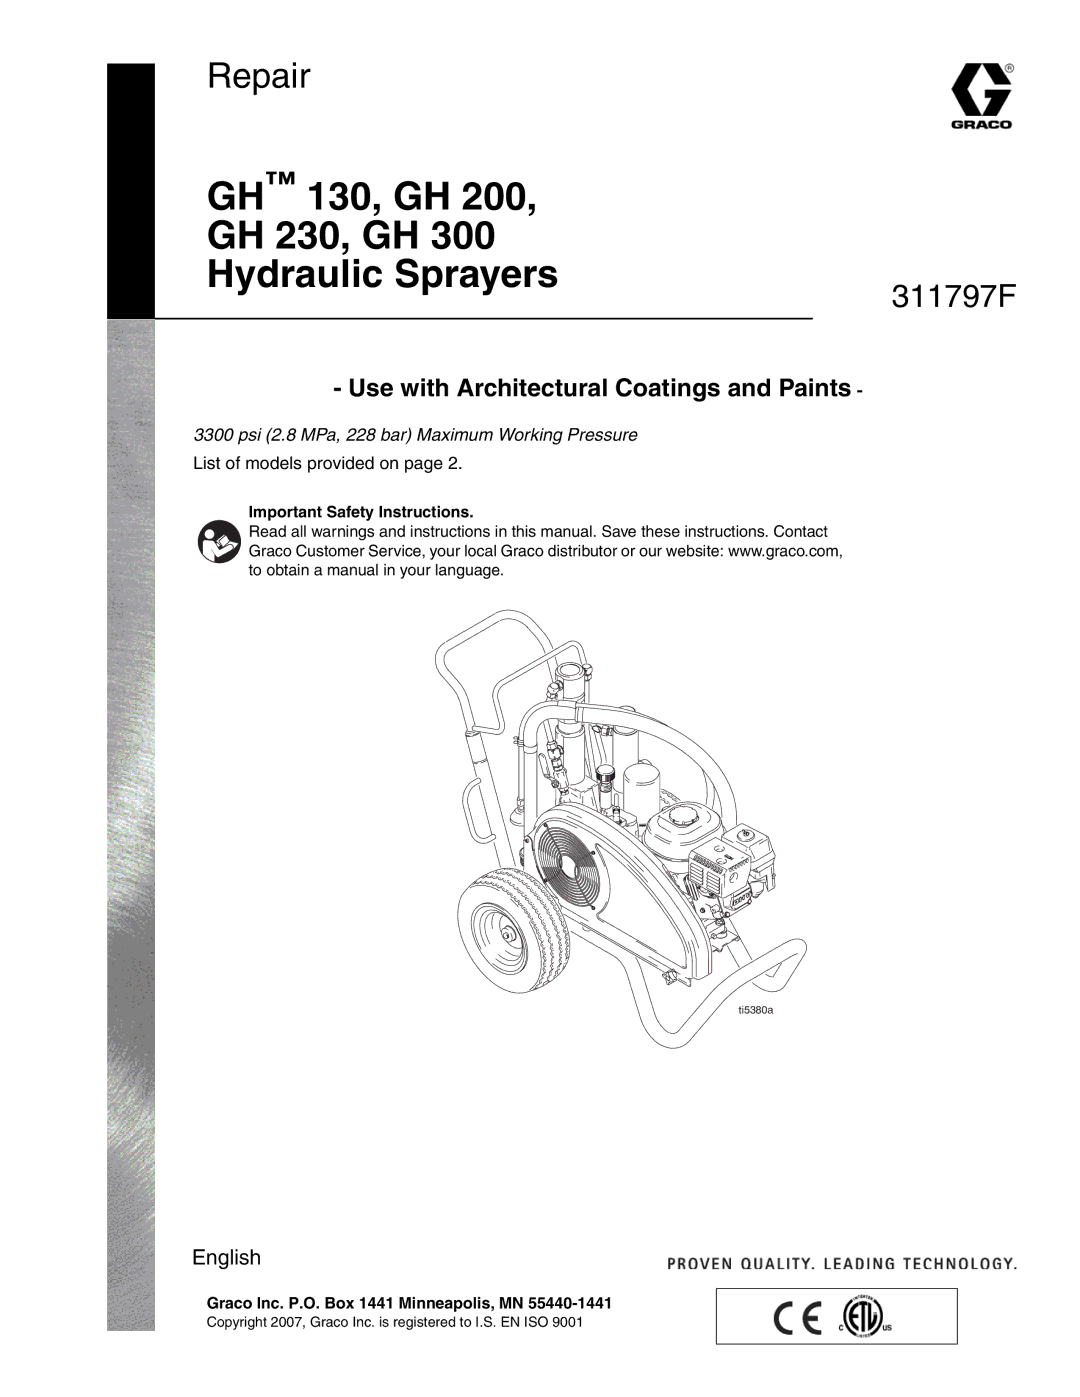 Hitachi GH 300 important safety instructions GH 130, GH GH 230, GH Hydraulic Sprayers 